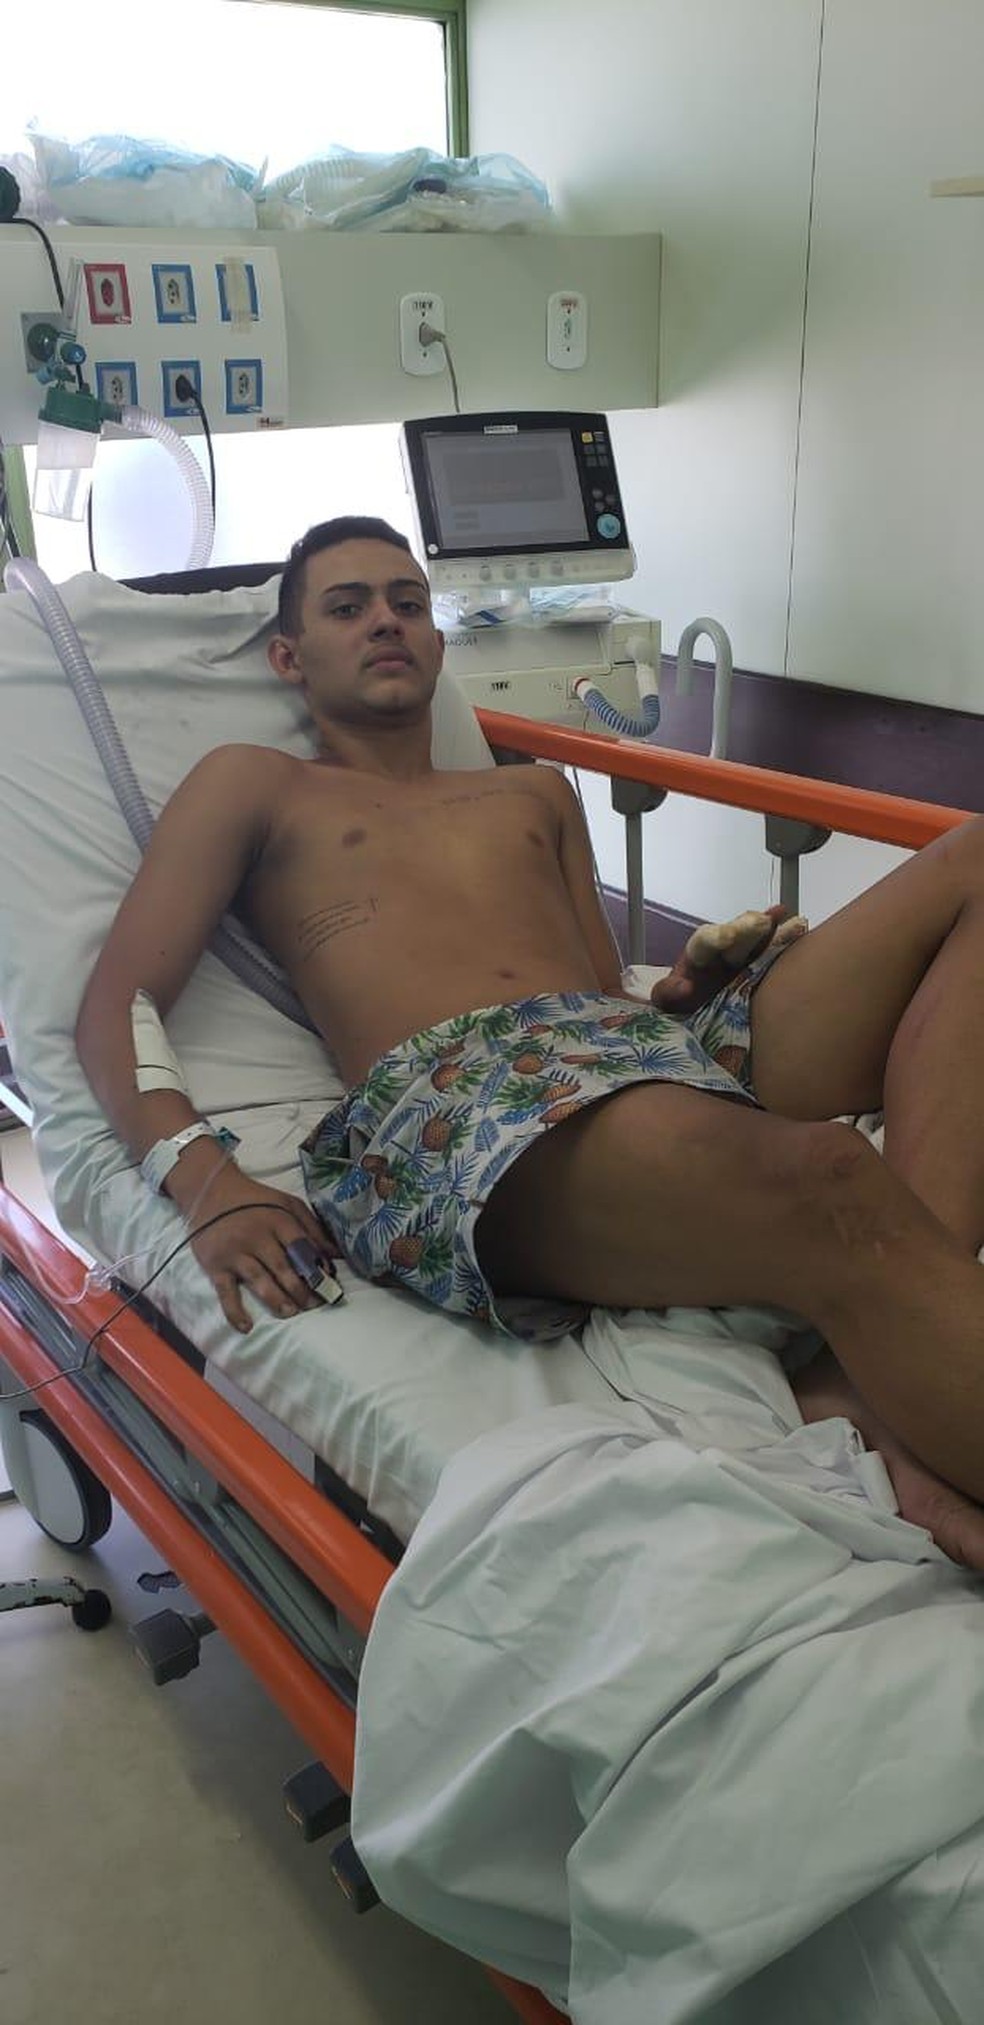 Cauan foi um dos jogadores feridos no incêndio. Atleta do Flamengo será transferido para hospital particular — Foto: Reprodução